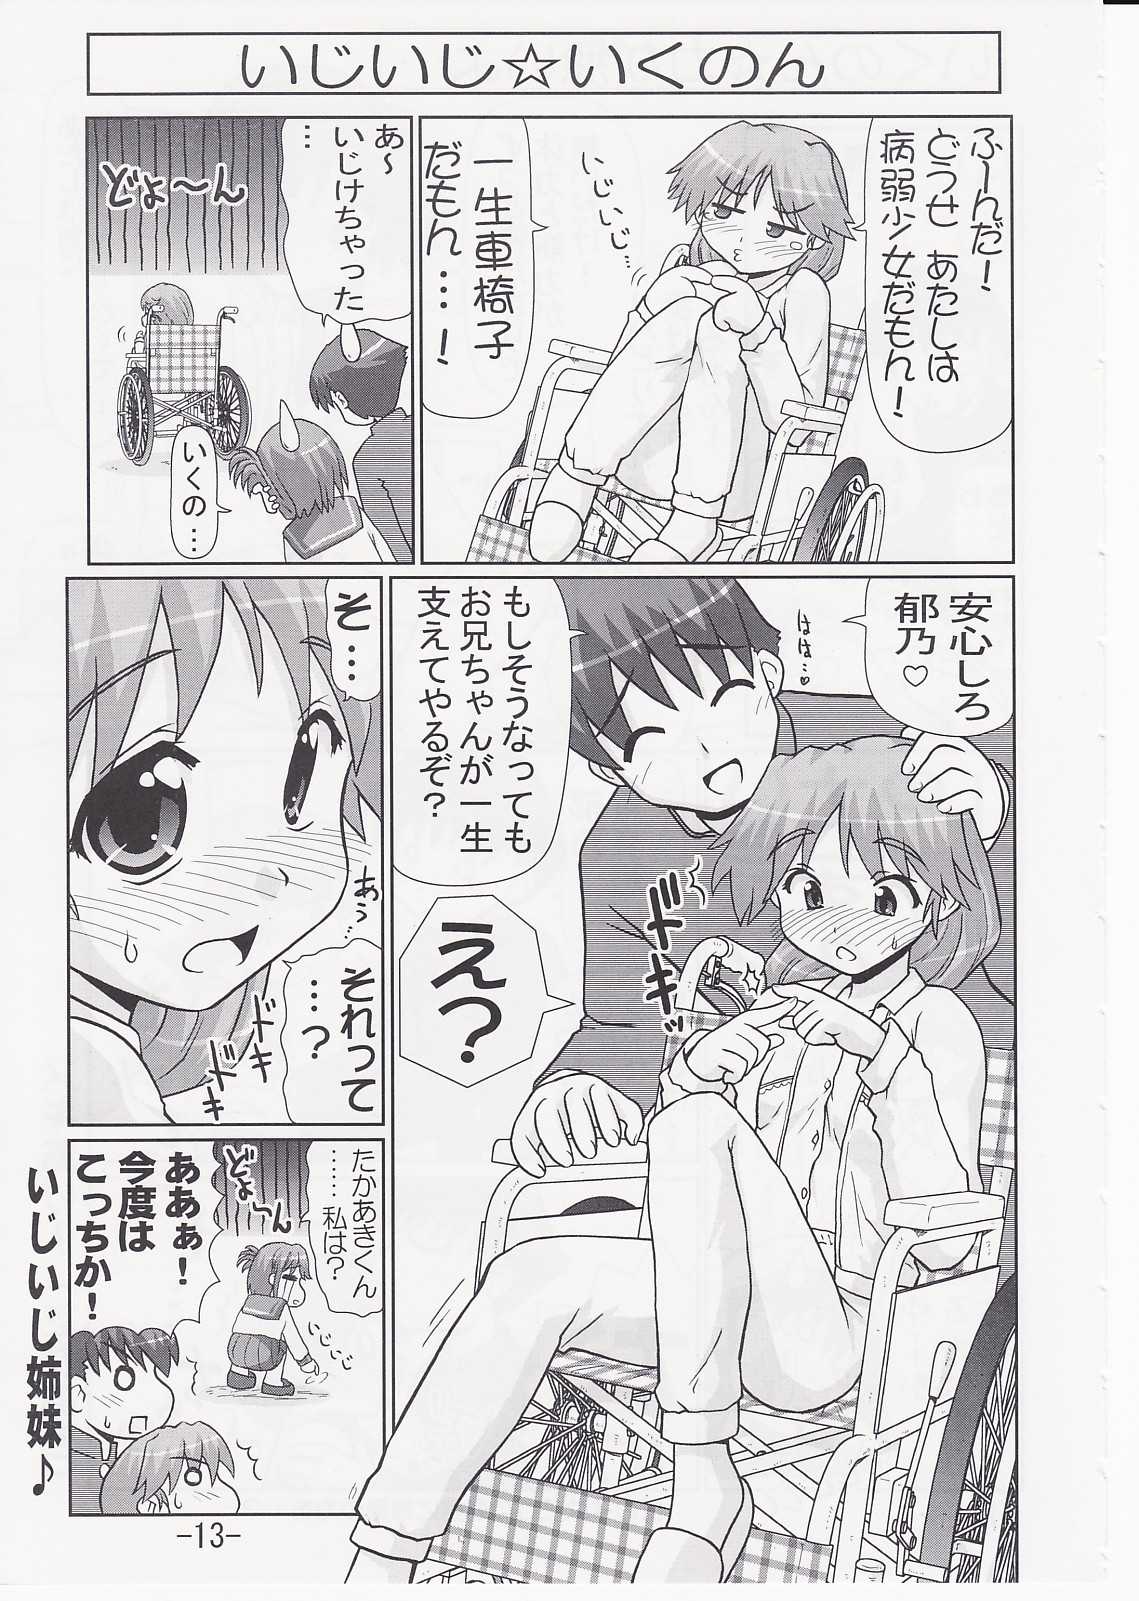 [PNO Group] Ikunon Manga 2 (ToHeart 2) 